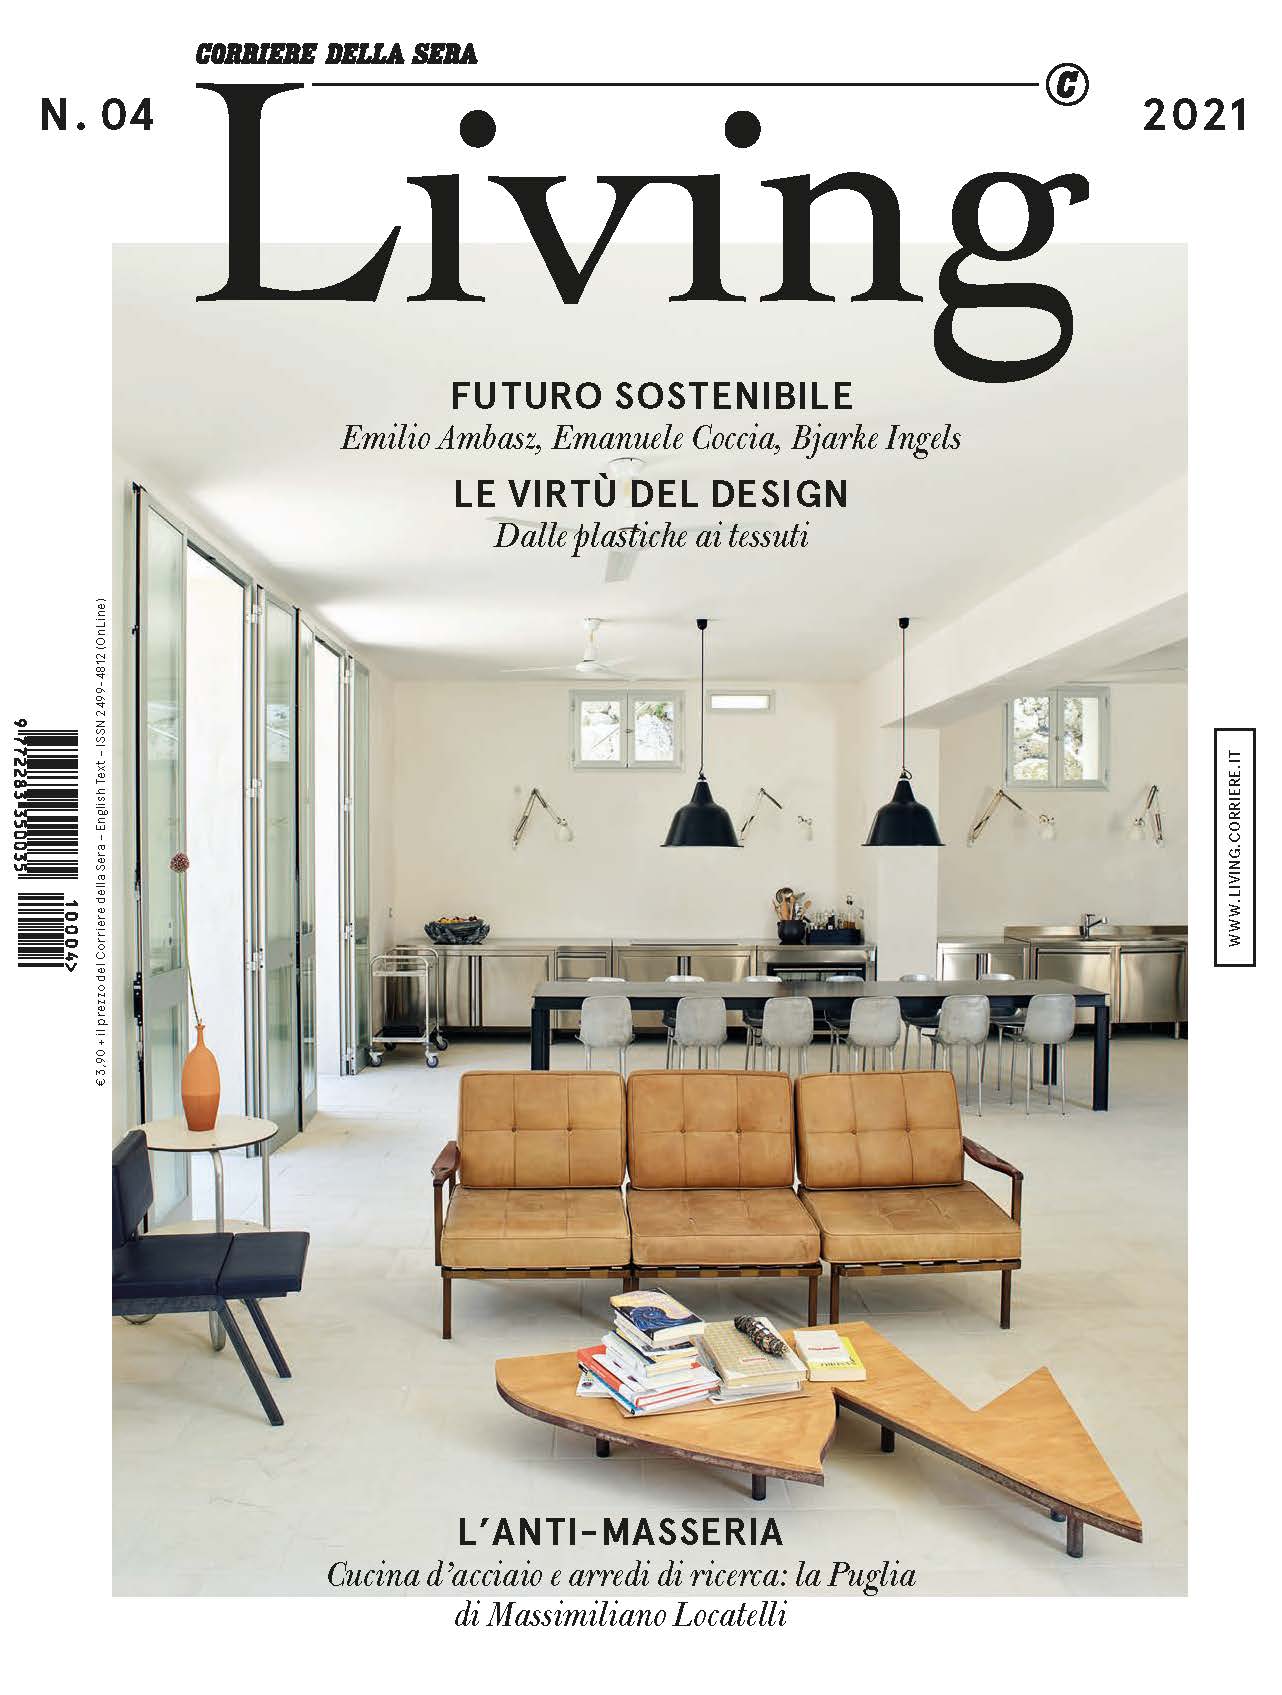 Cover photo - The Patti armchair by BertO on Living - Corriere della Sera